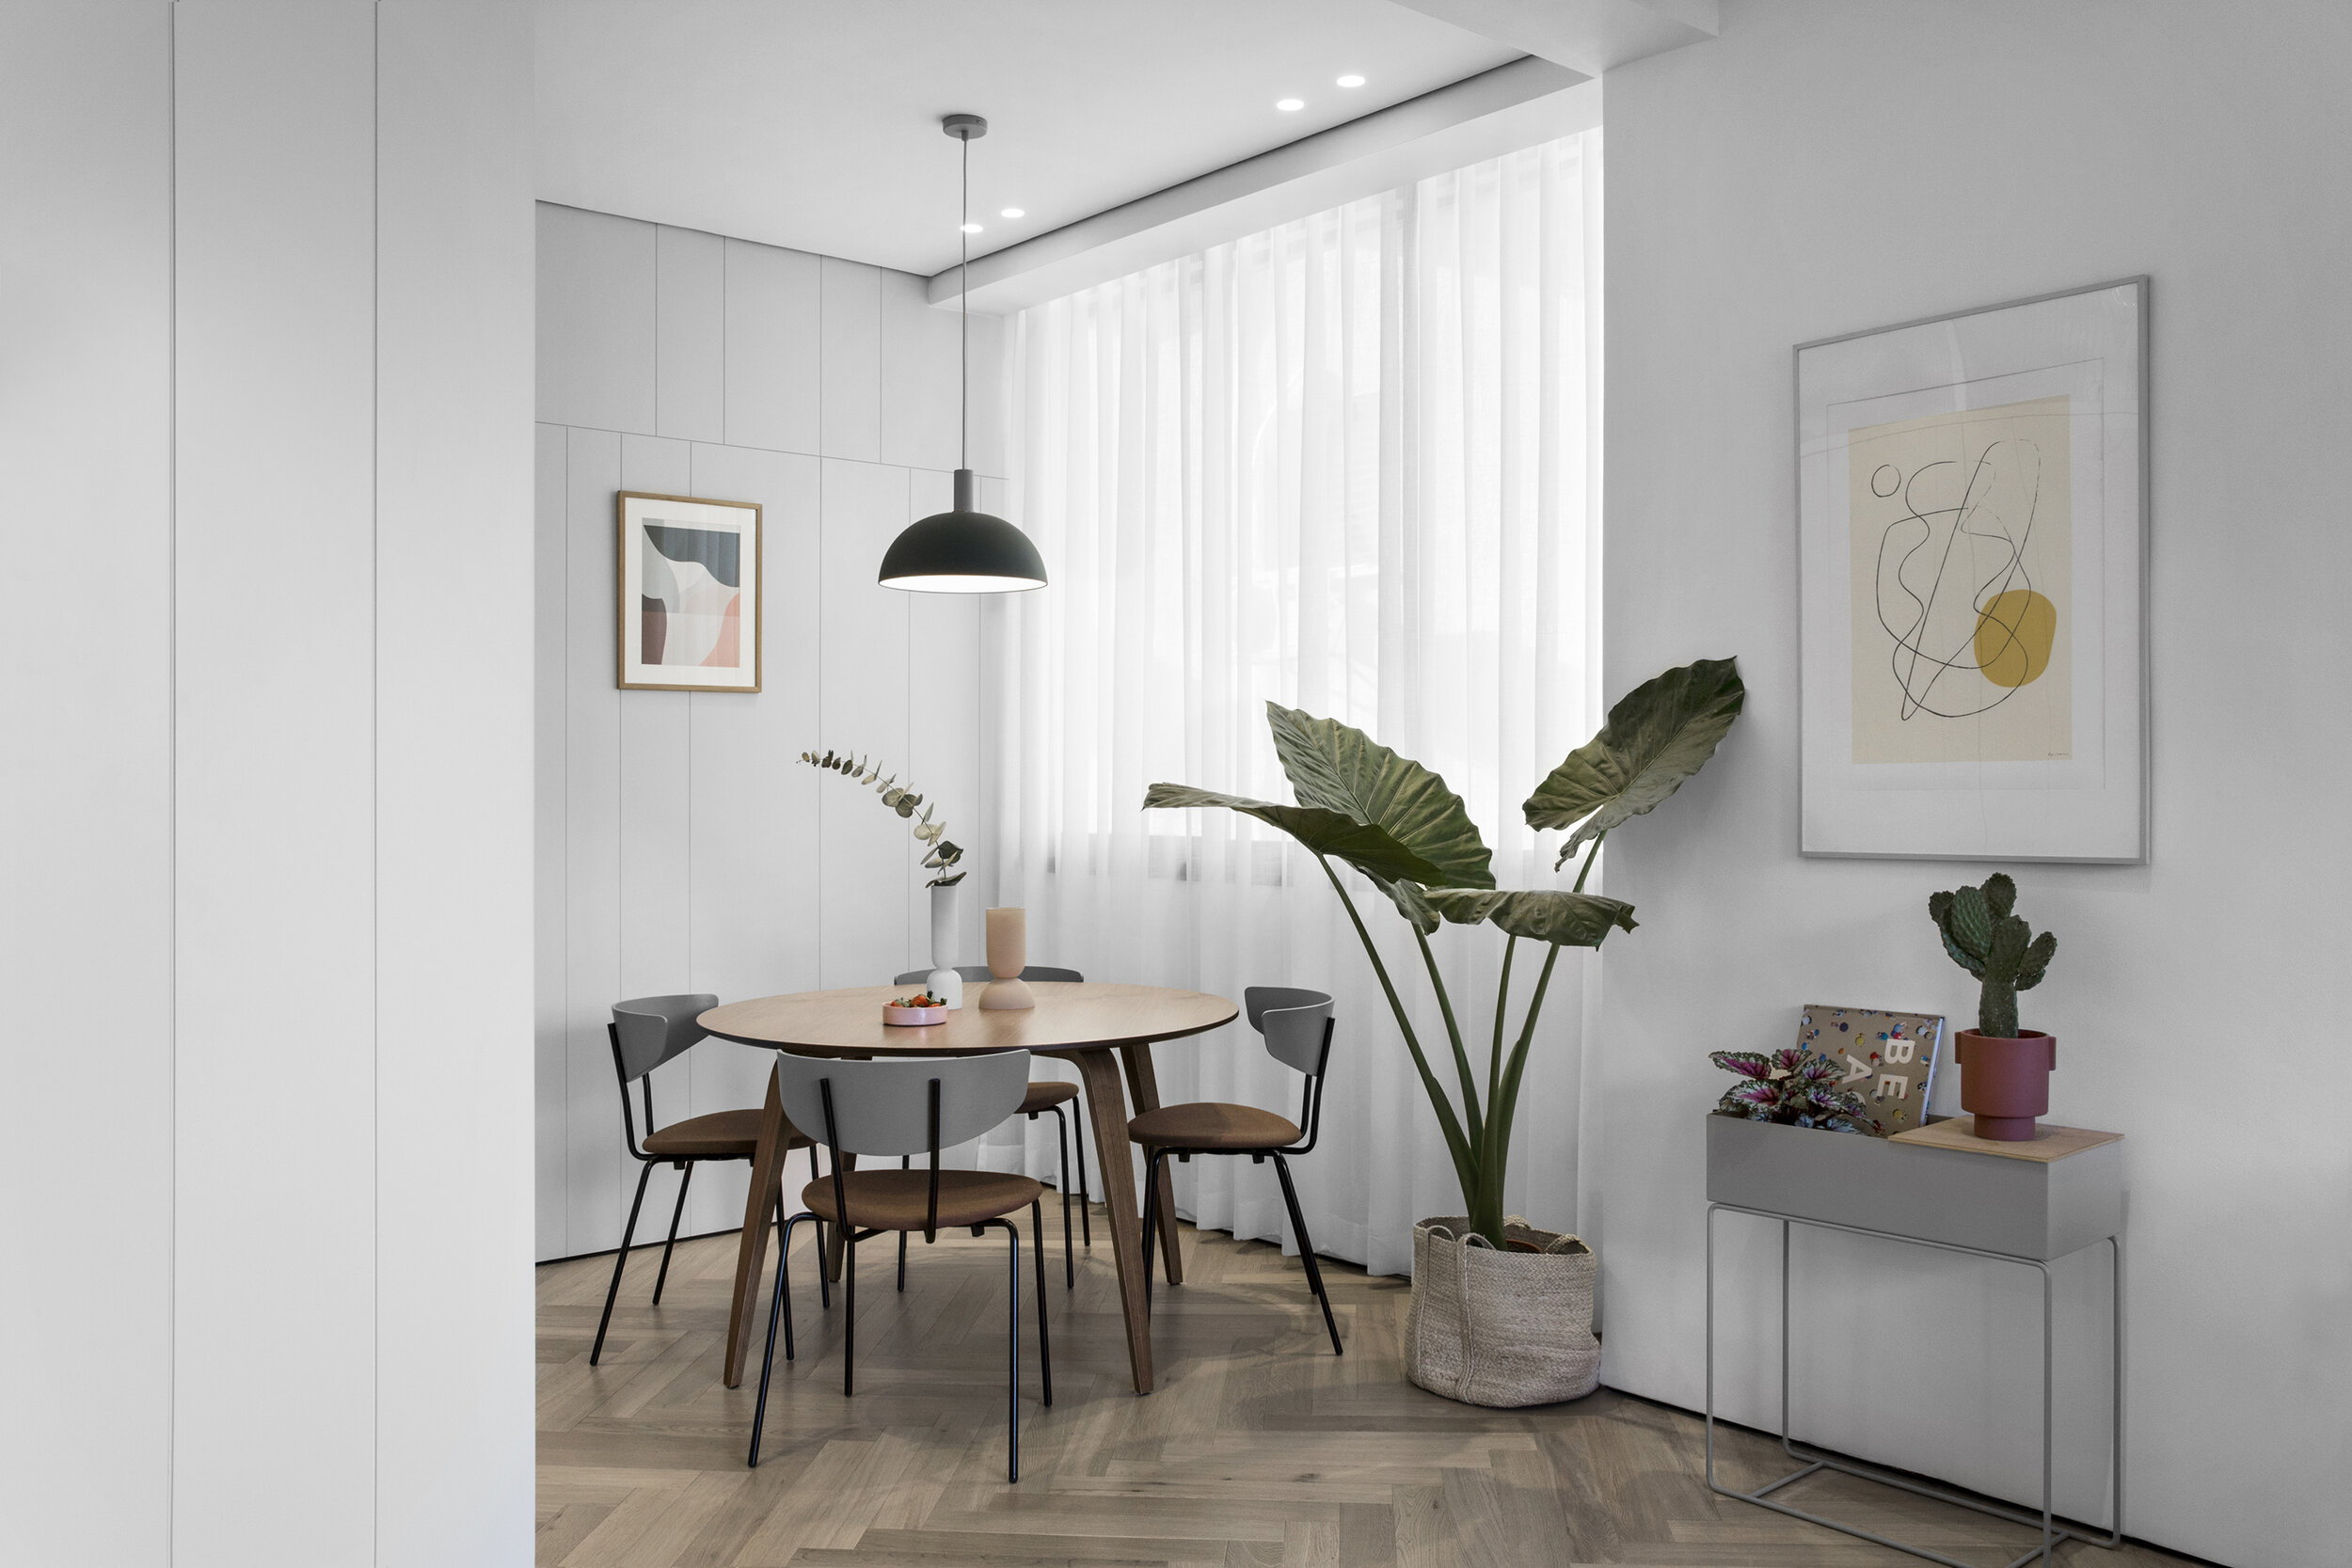 Light grey joinery hardwood floors Tel aviv apartment